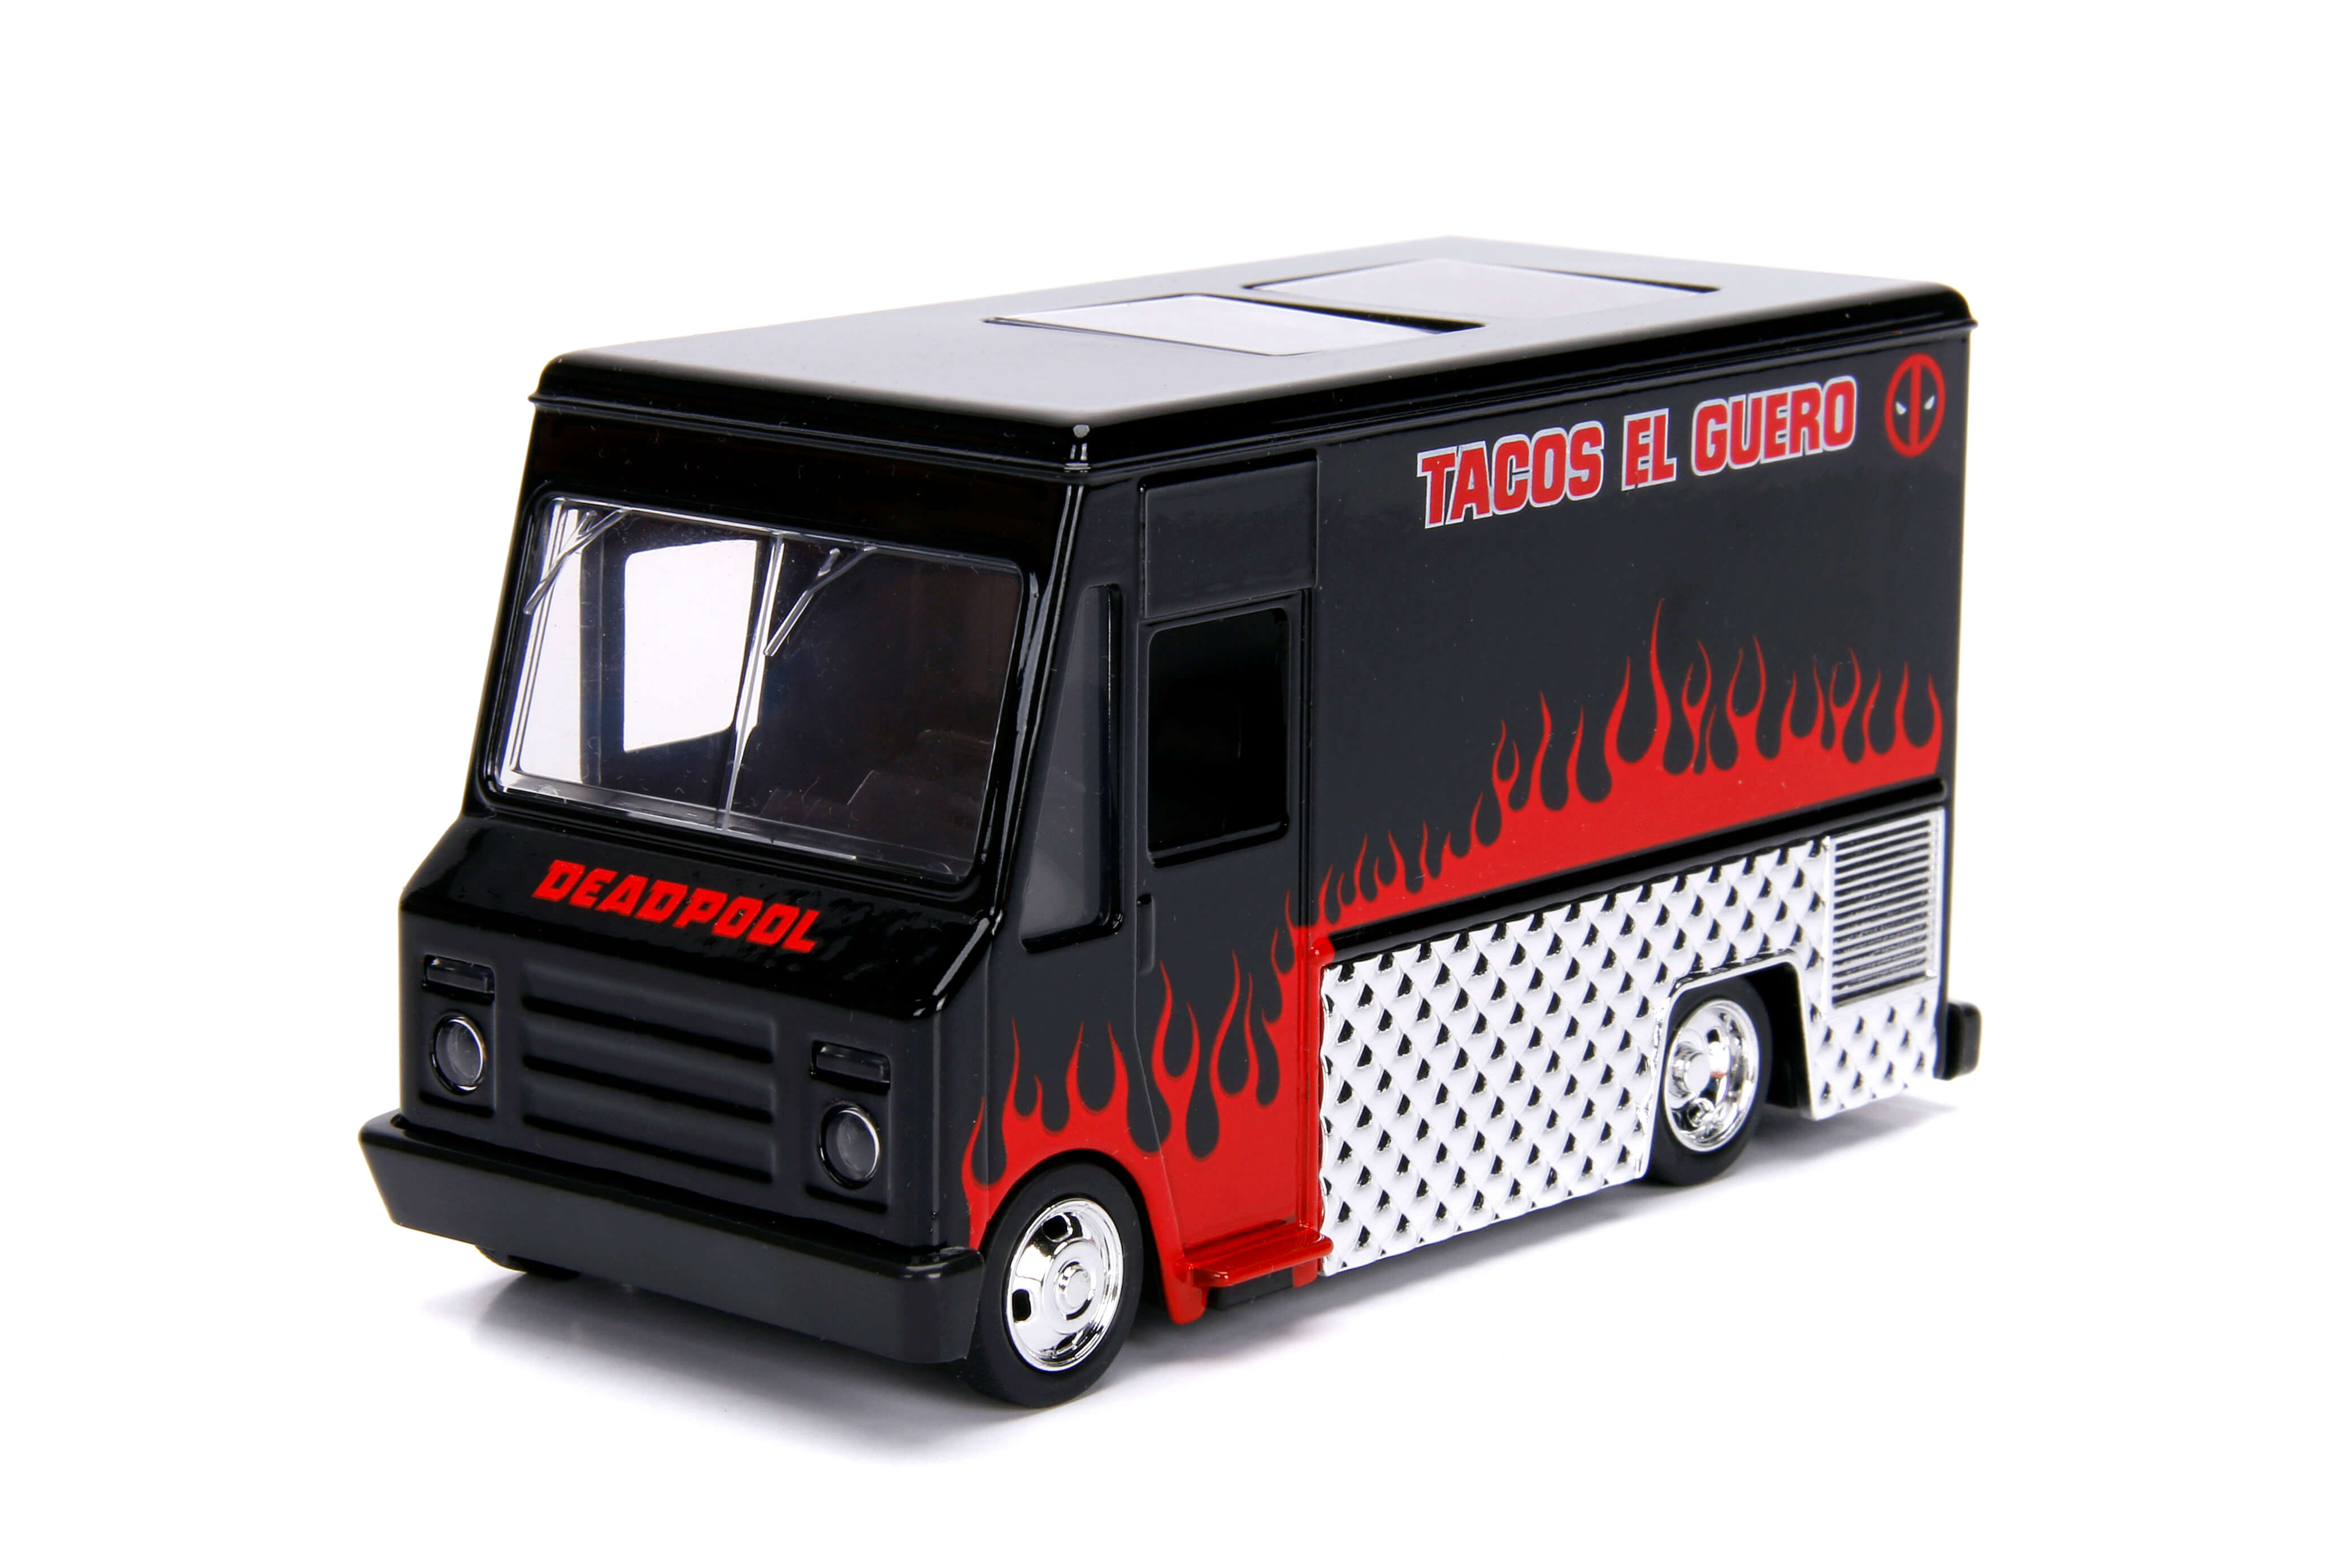 deadpool taco truck edition